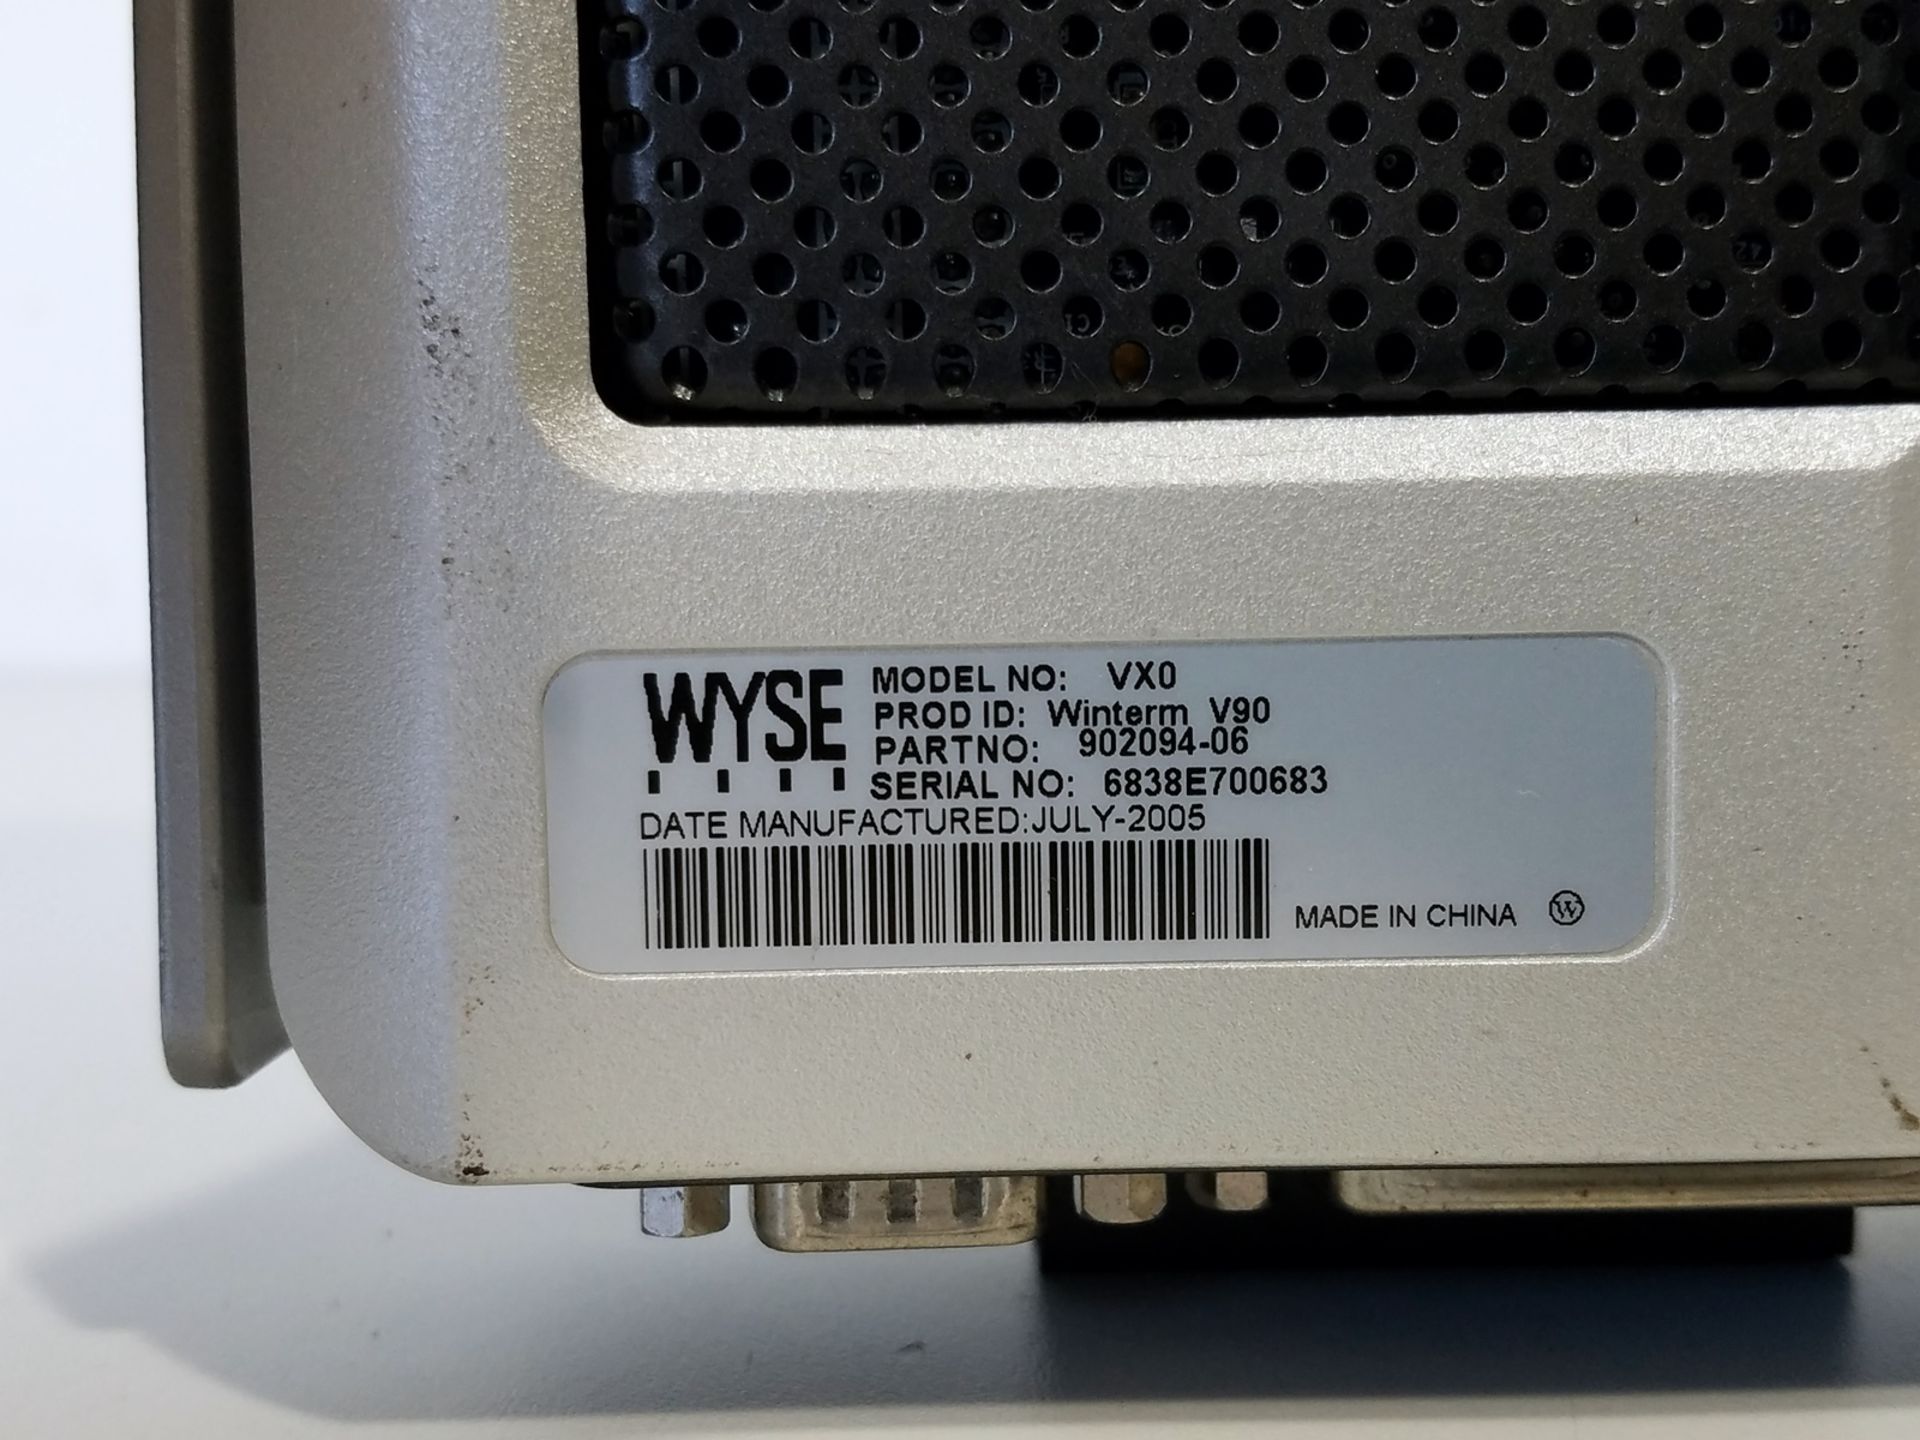 WYSE MODEL VXO, WINTERM V90, TERMINAL - Image 4 of 4